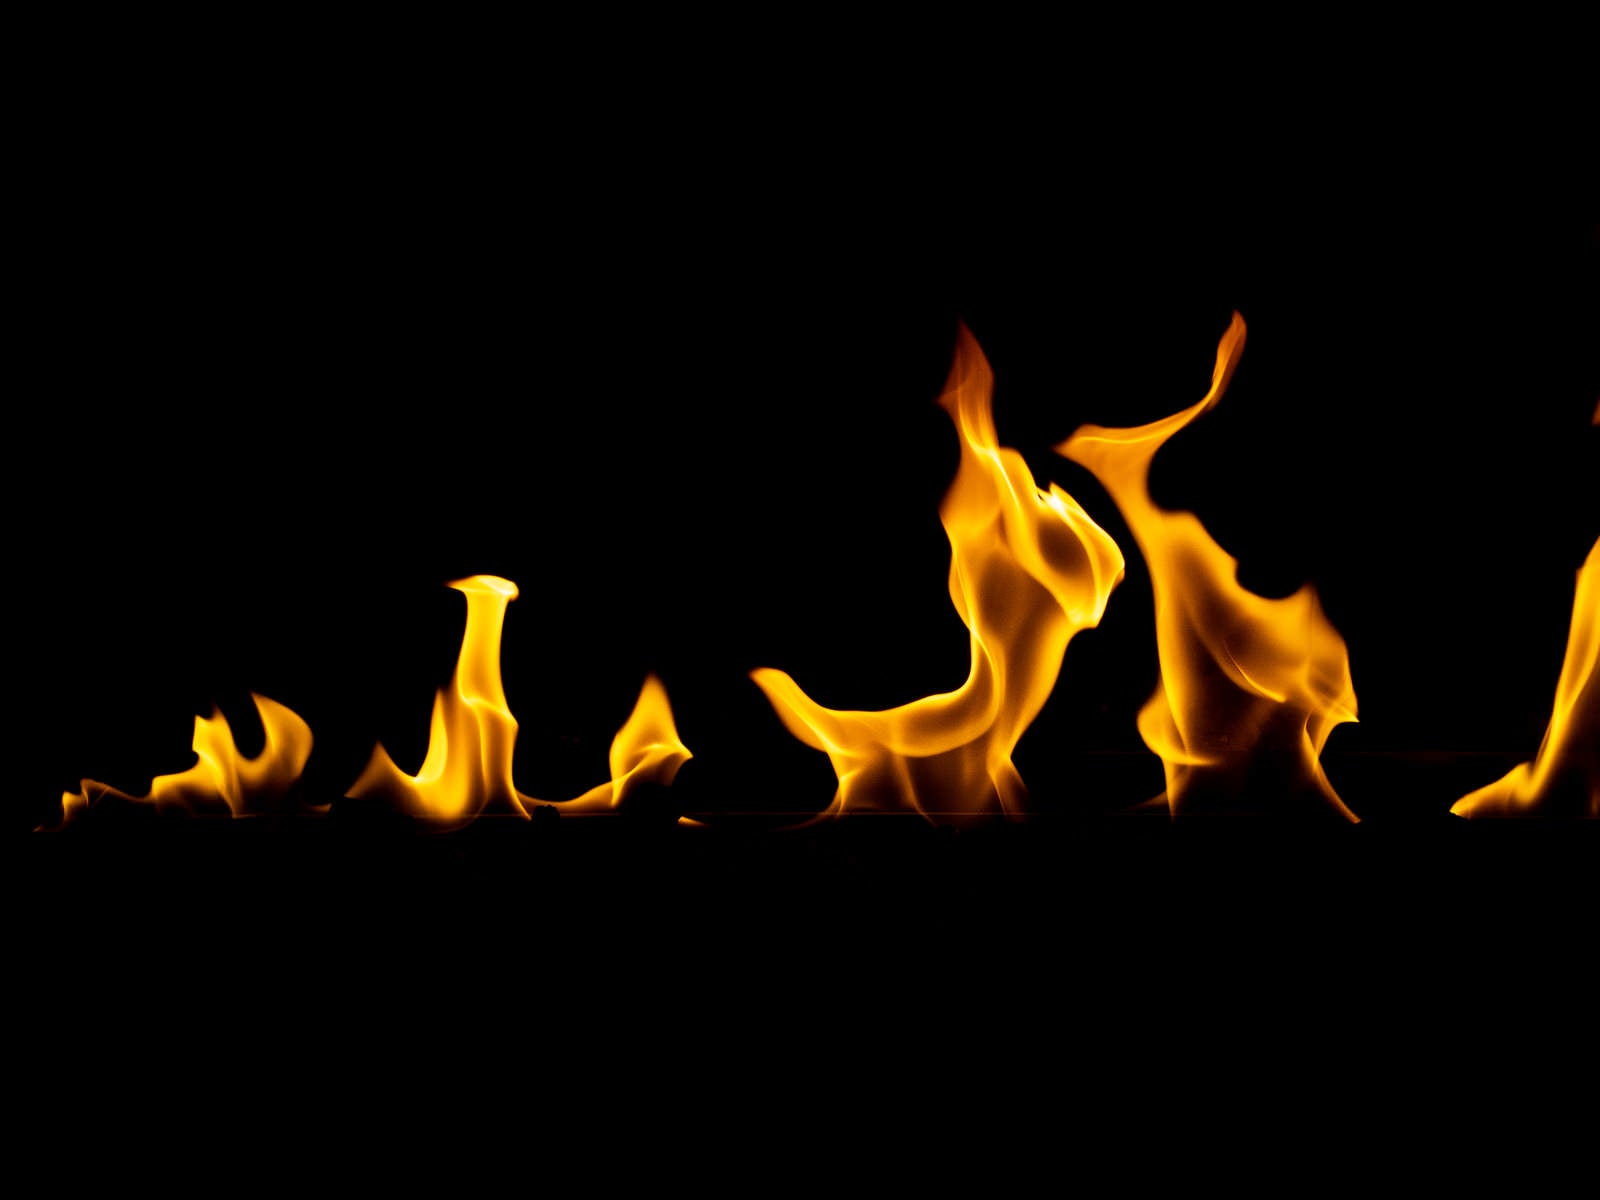 「炎がメラメラと揺れる」の写真